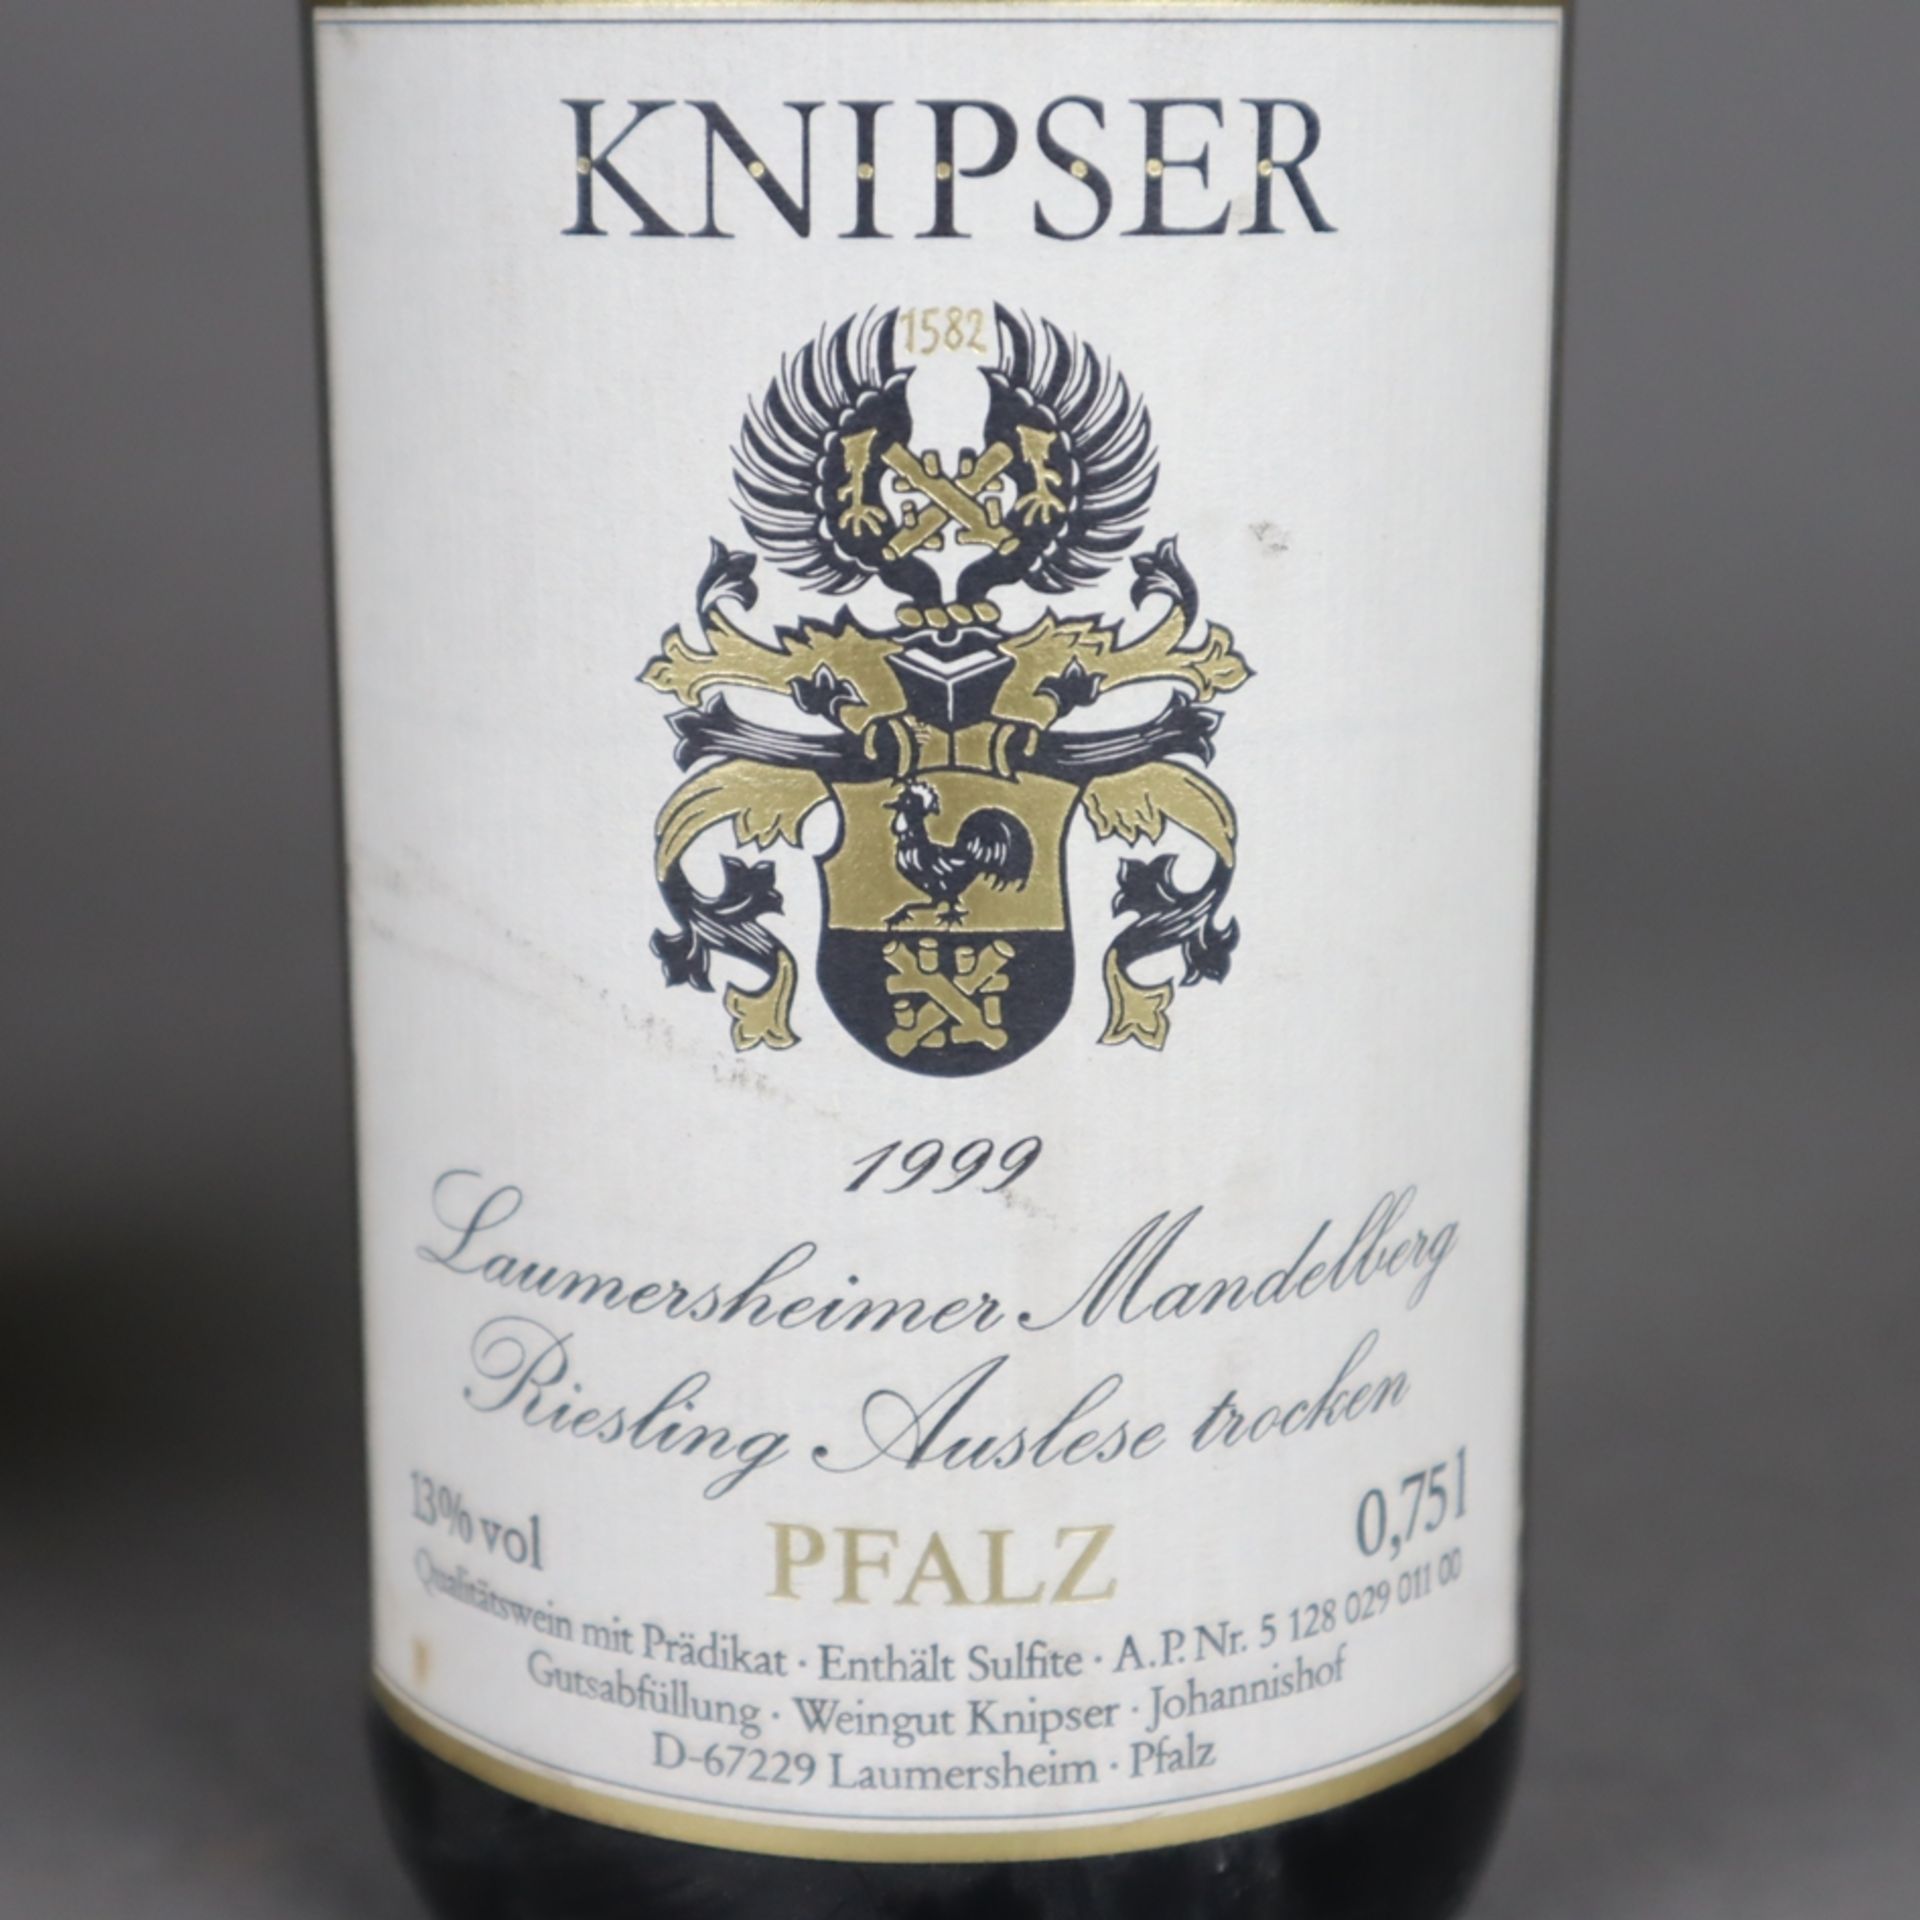 Weinkonvolut - 2 Flaschen 1999er Laumersheimer Mandelberg, Riesling Auslese, We - Bild 4 aus 5